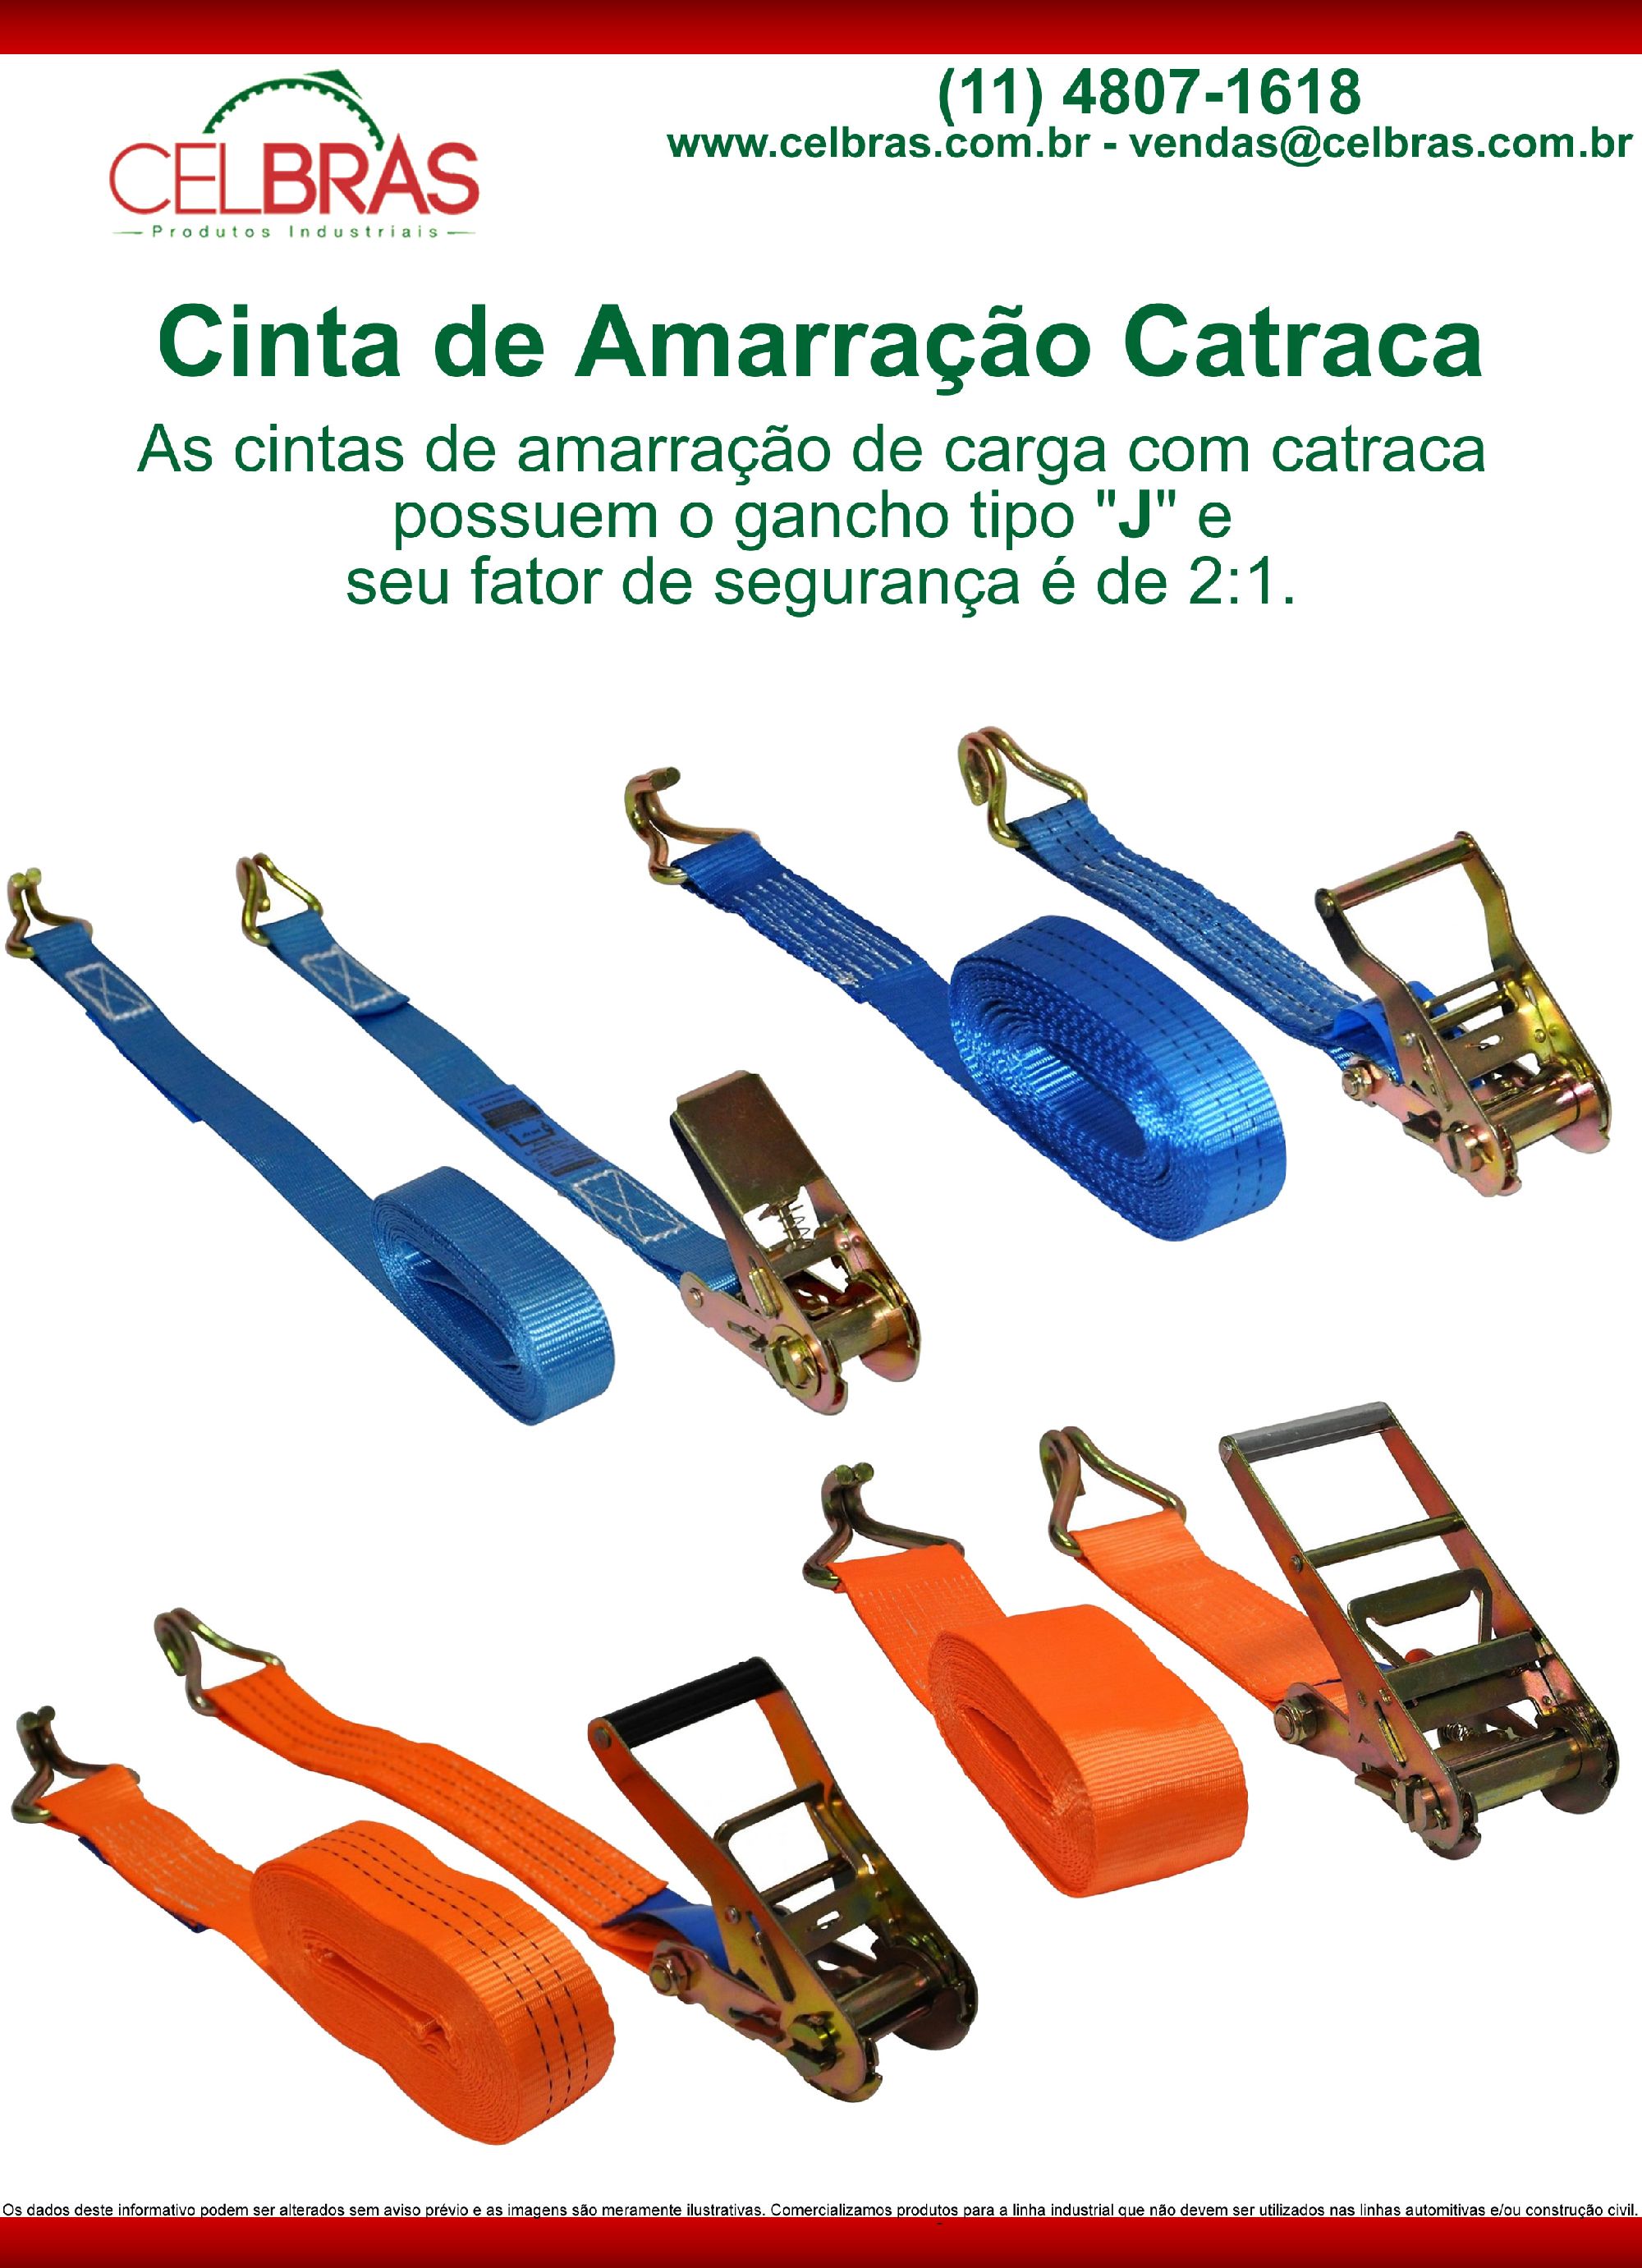 Cintas Amarração - Catracas